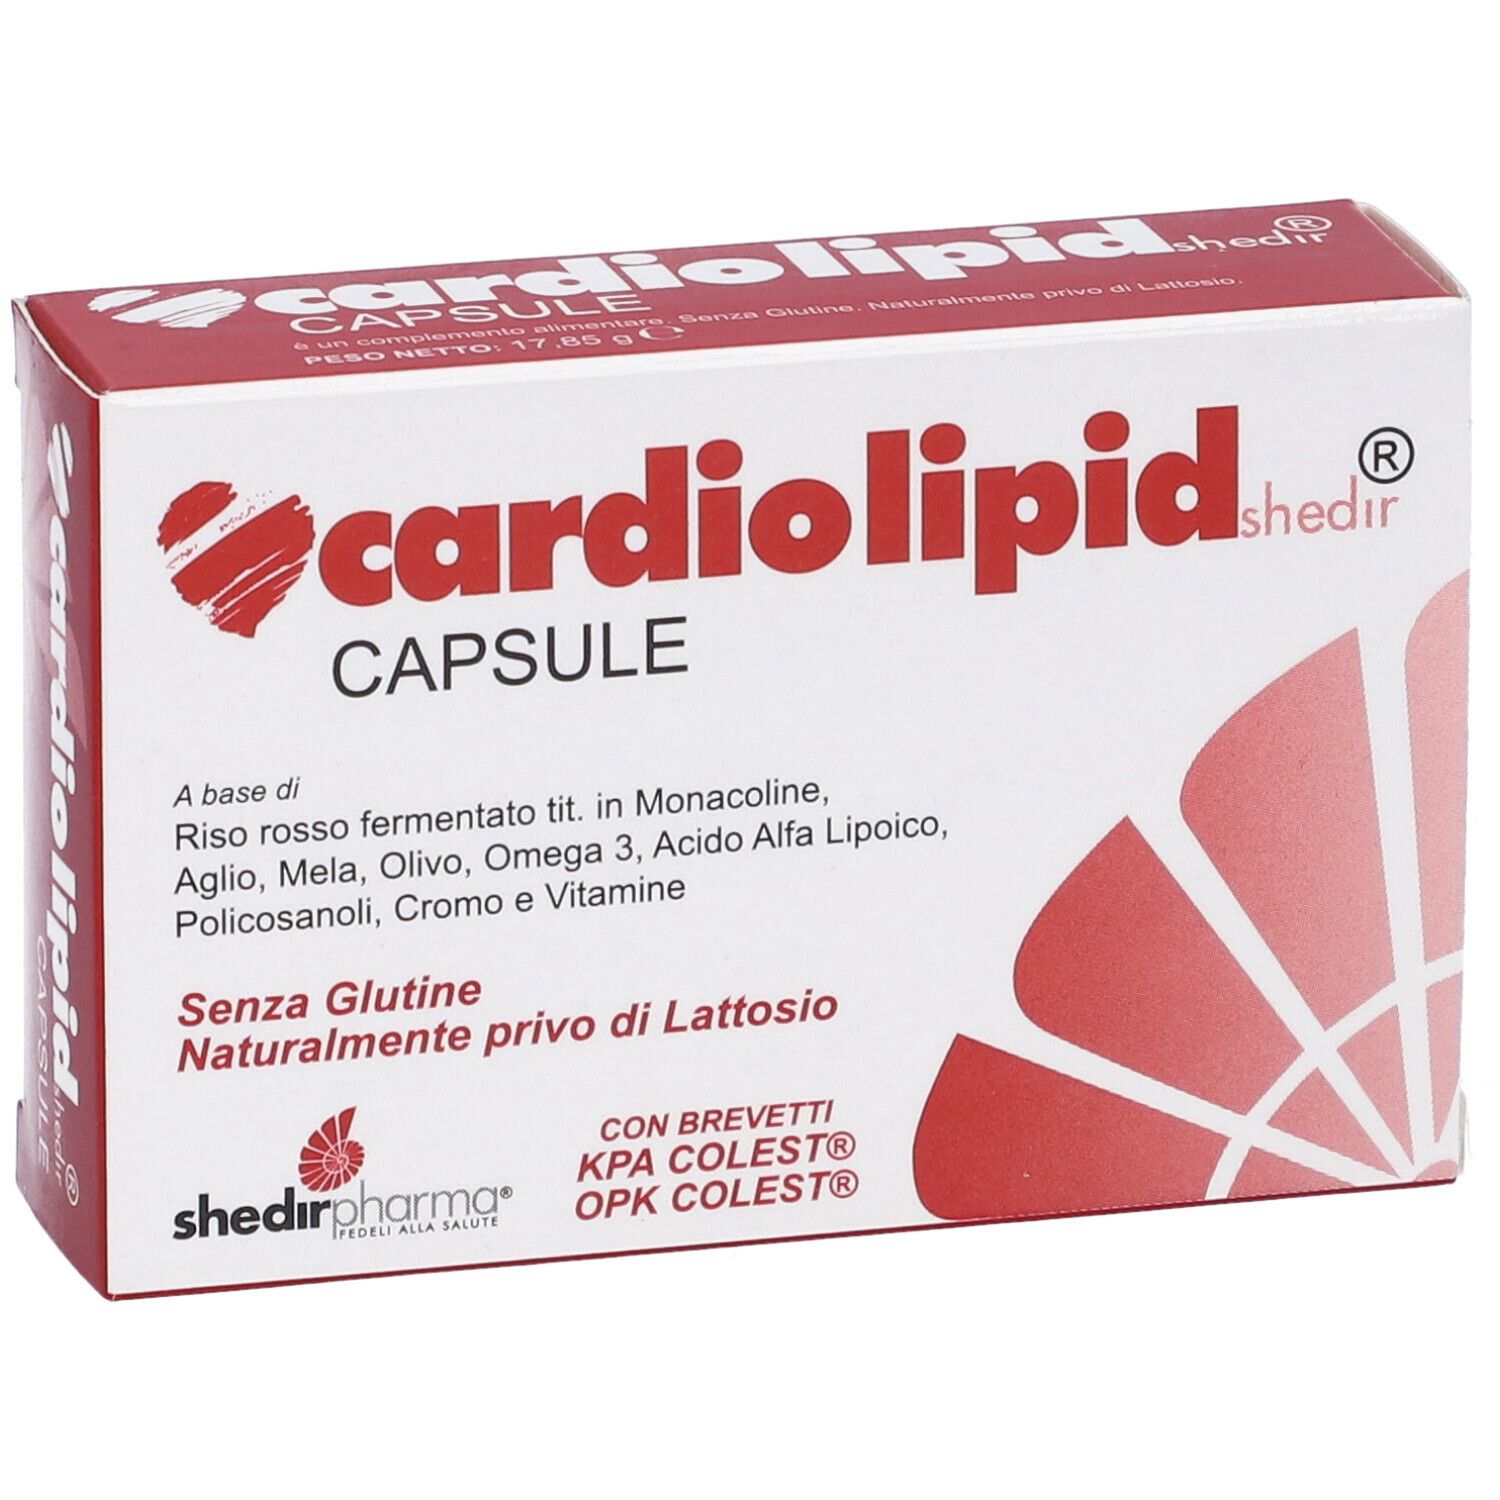 Cardiolipid Shedir®